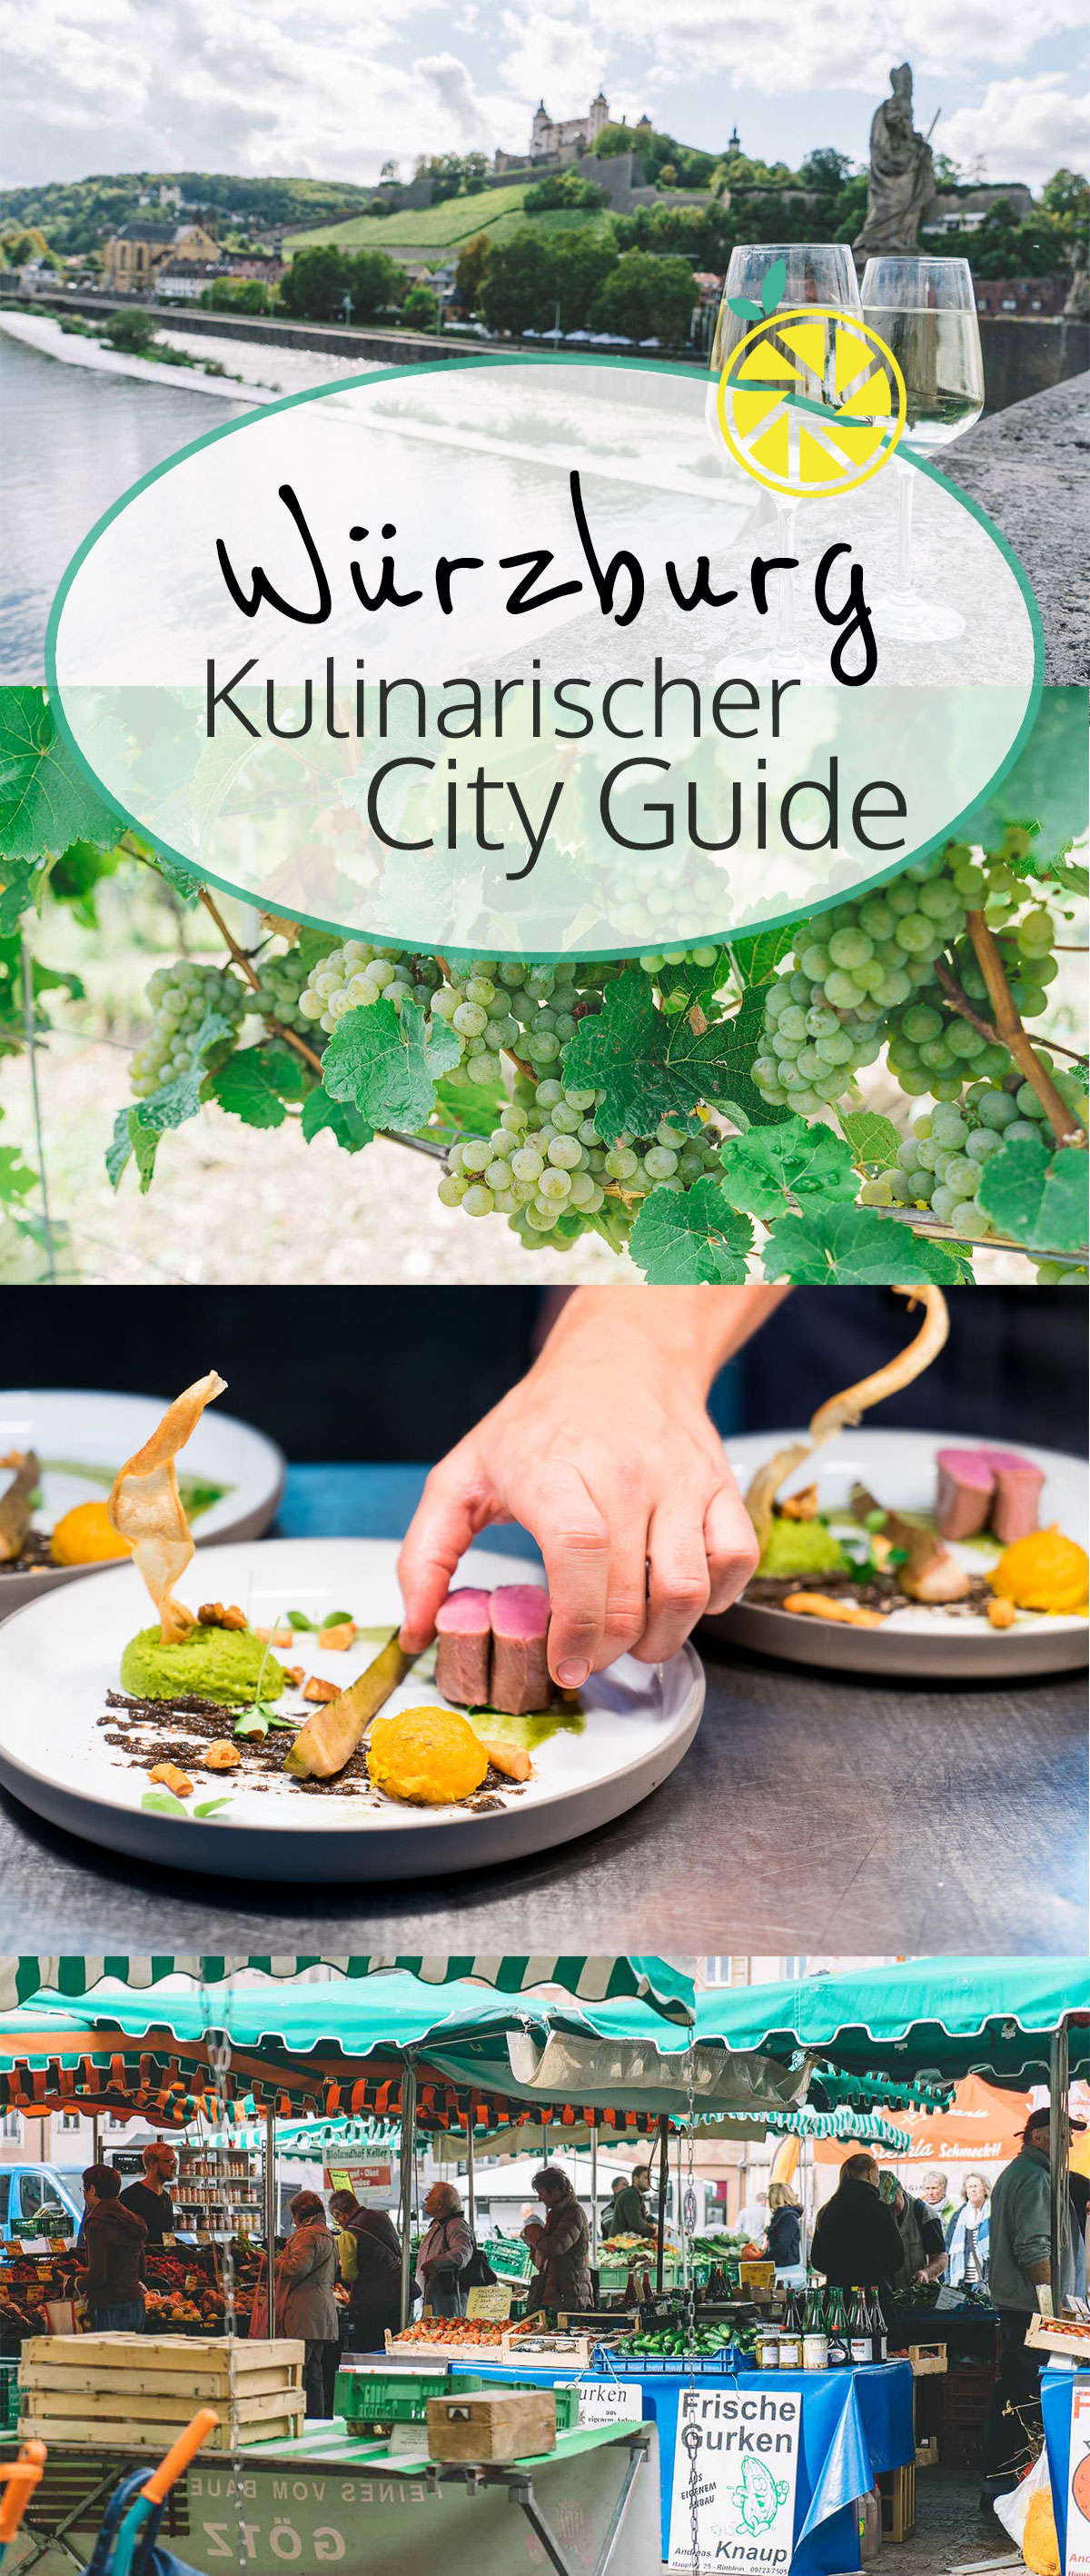 Würzburg: Kulinarischer City Guide mit Restaurants, Cafés, kulinarischen Tipps zum Einkaufen und Weingütern